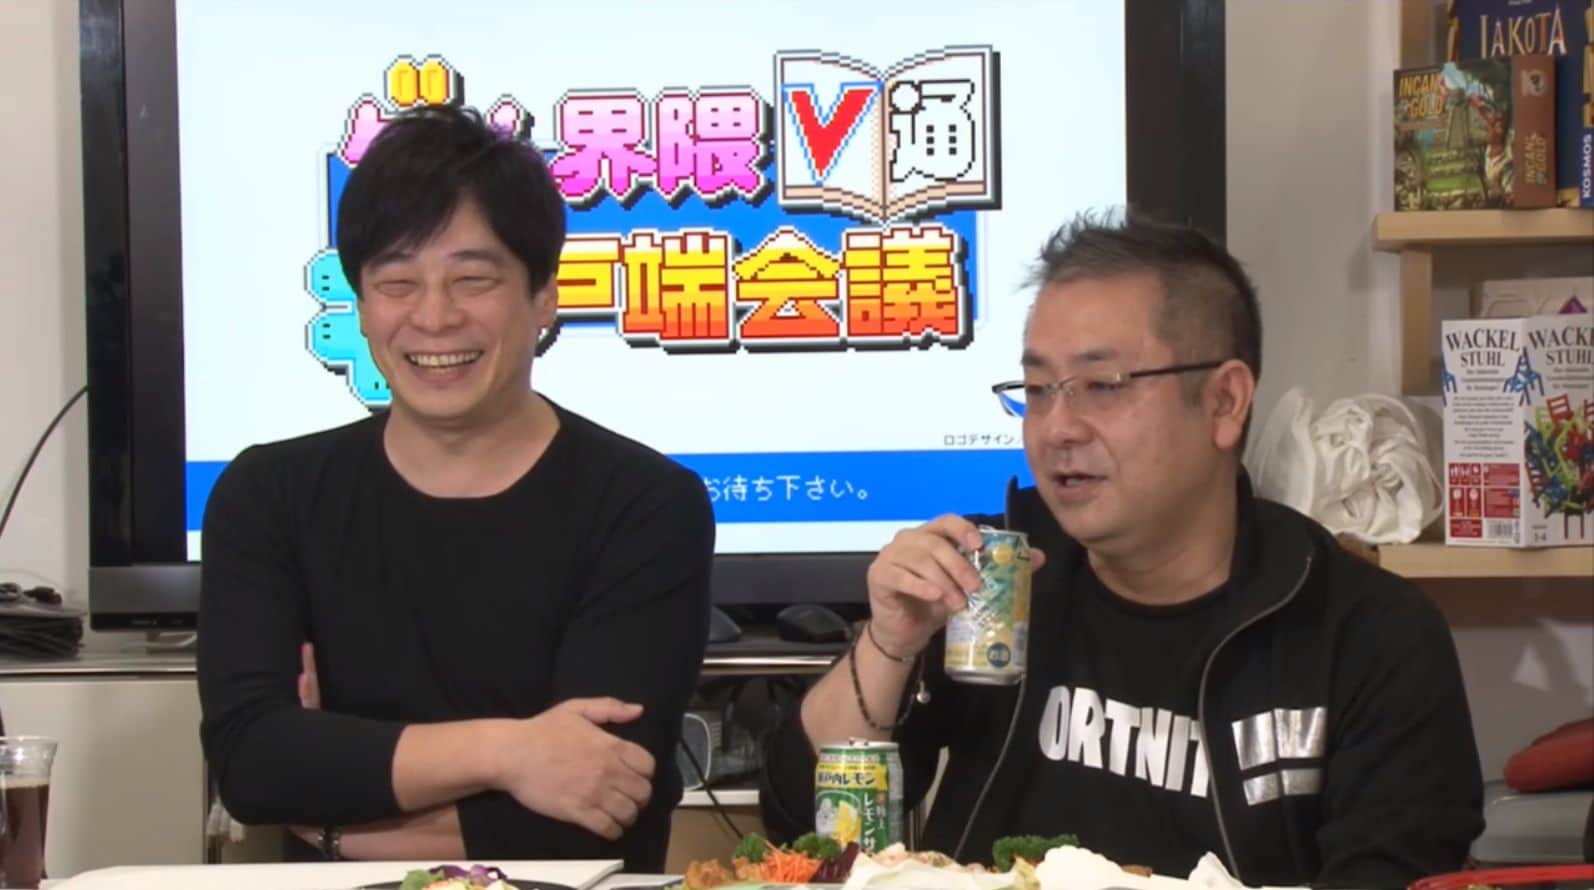 Hajime Tabata habla sobre su etapa en Square Enix y sus nuevos proyectos en JP Games